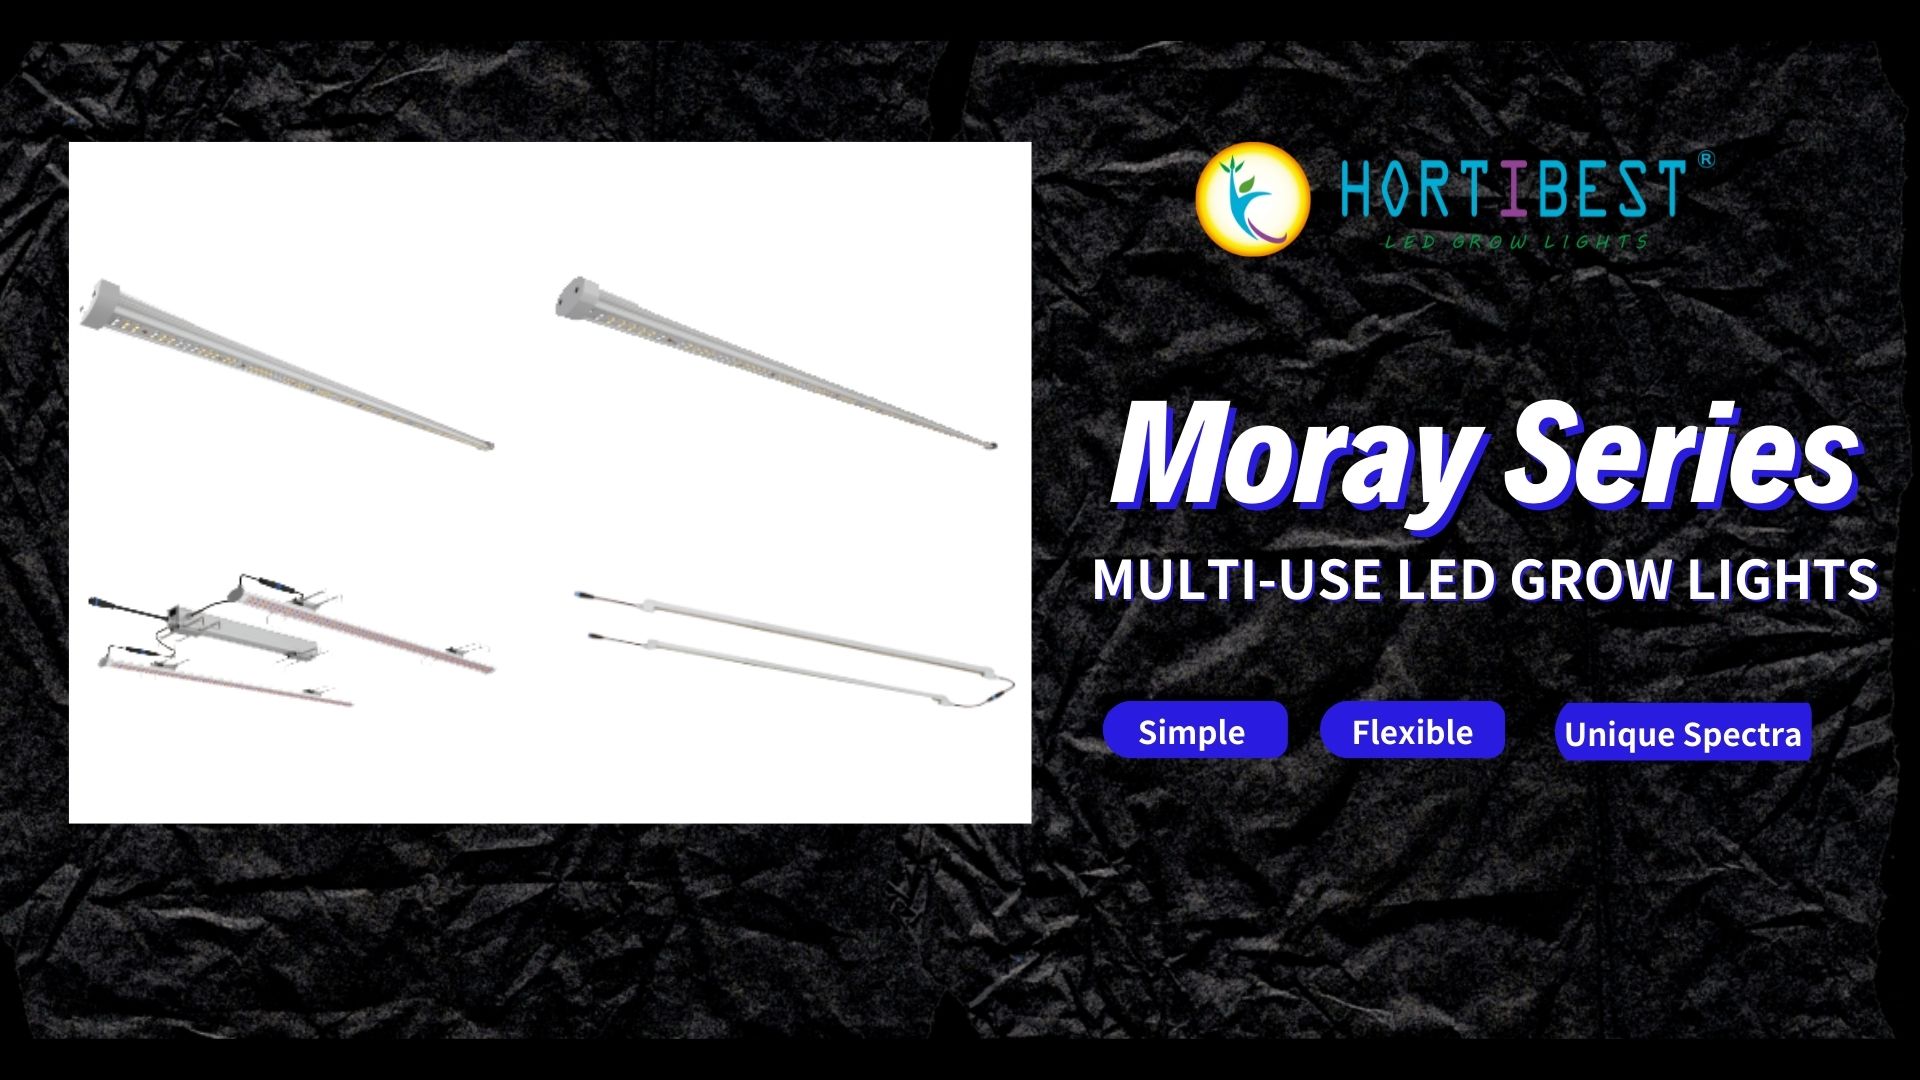 Moray Series: Multi-Use LED Grow Lights